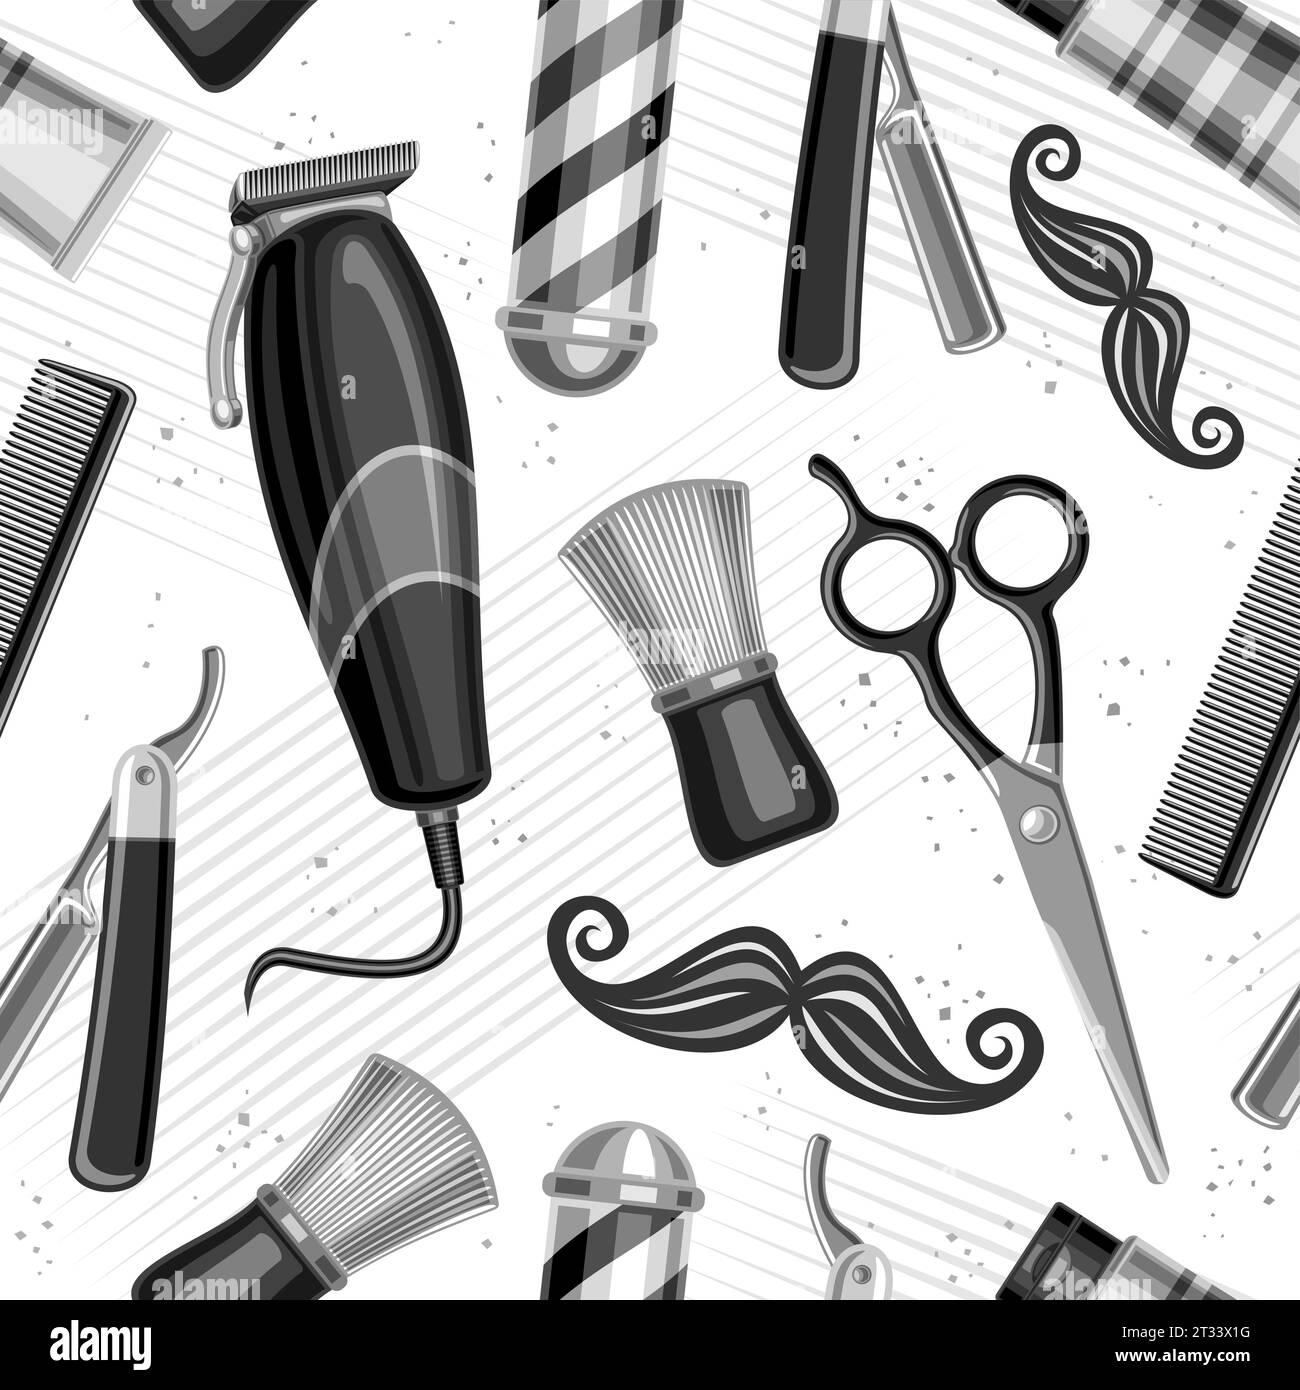 Vector Barbershop nahtloses Muster, wiederholender Hintergrund mit Illustrationen der Friseur-Shop-Ausrüstung für Tapeten, dekoratives quadratisches Poster mit Flyi Stock Vektor